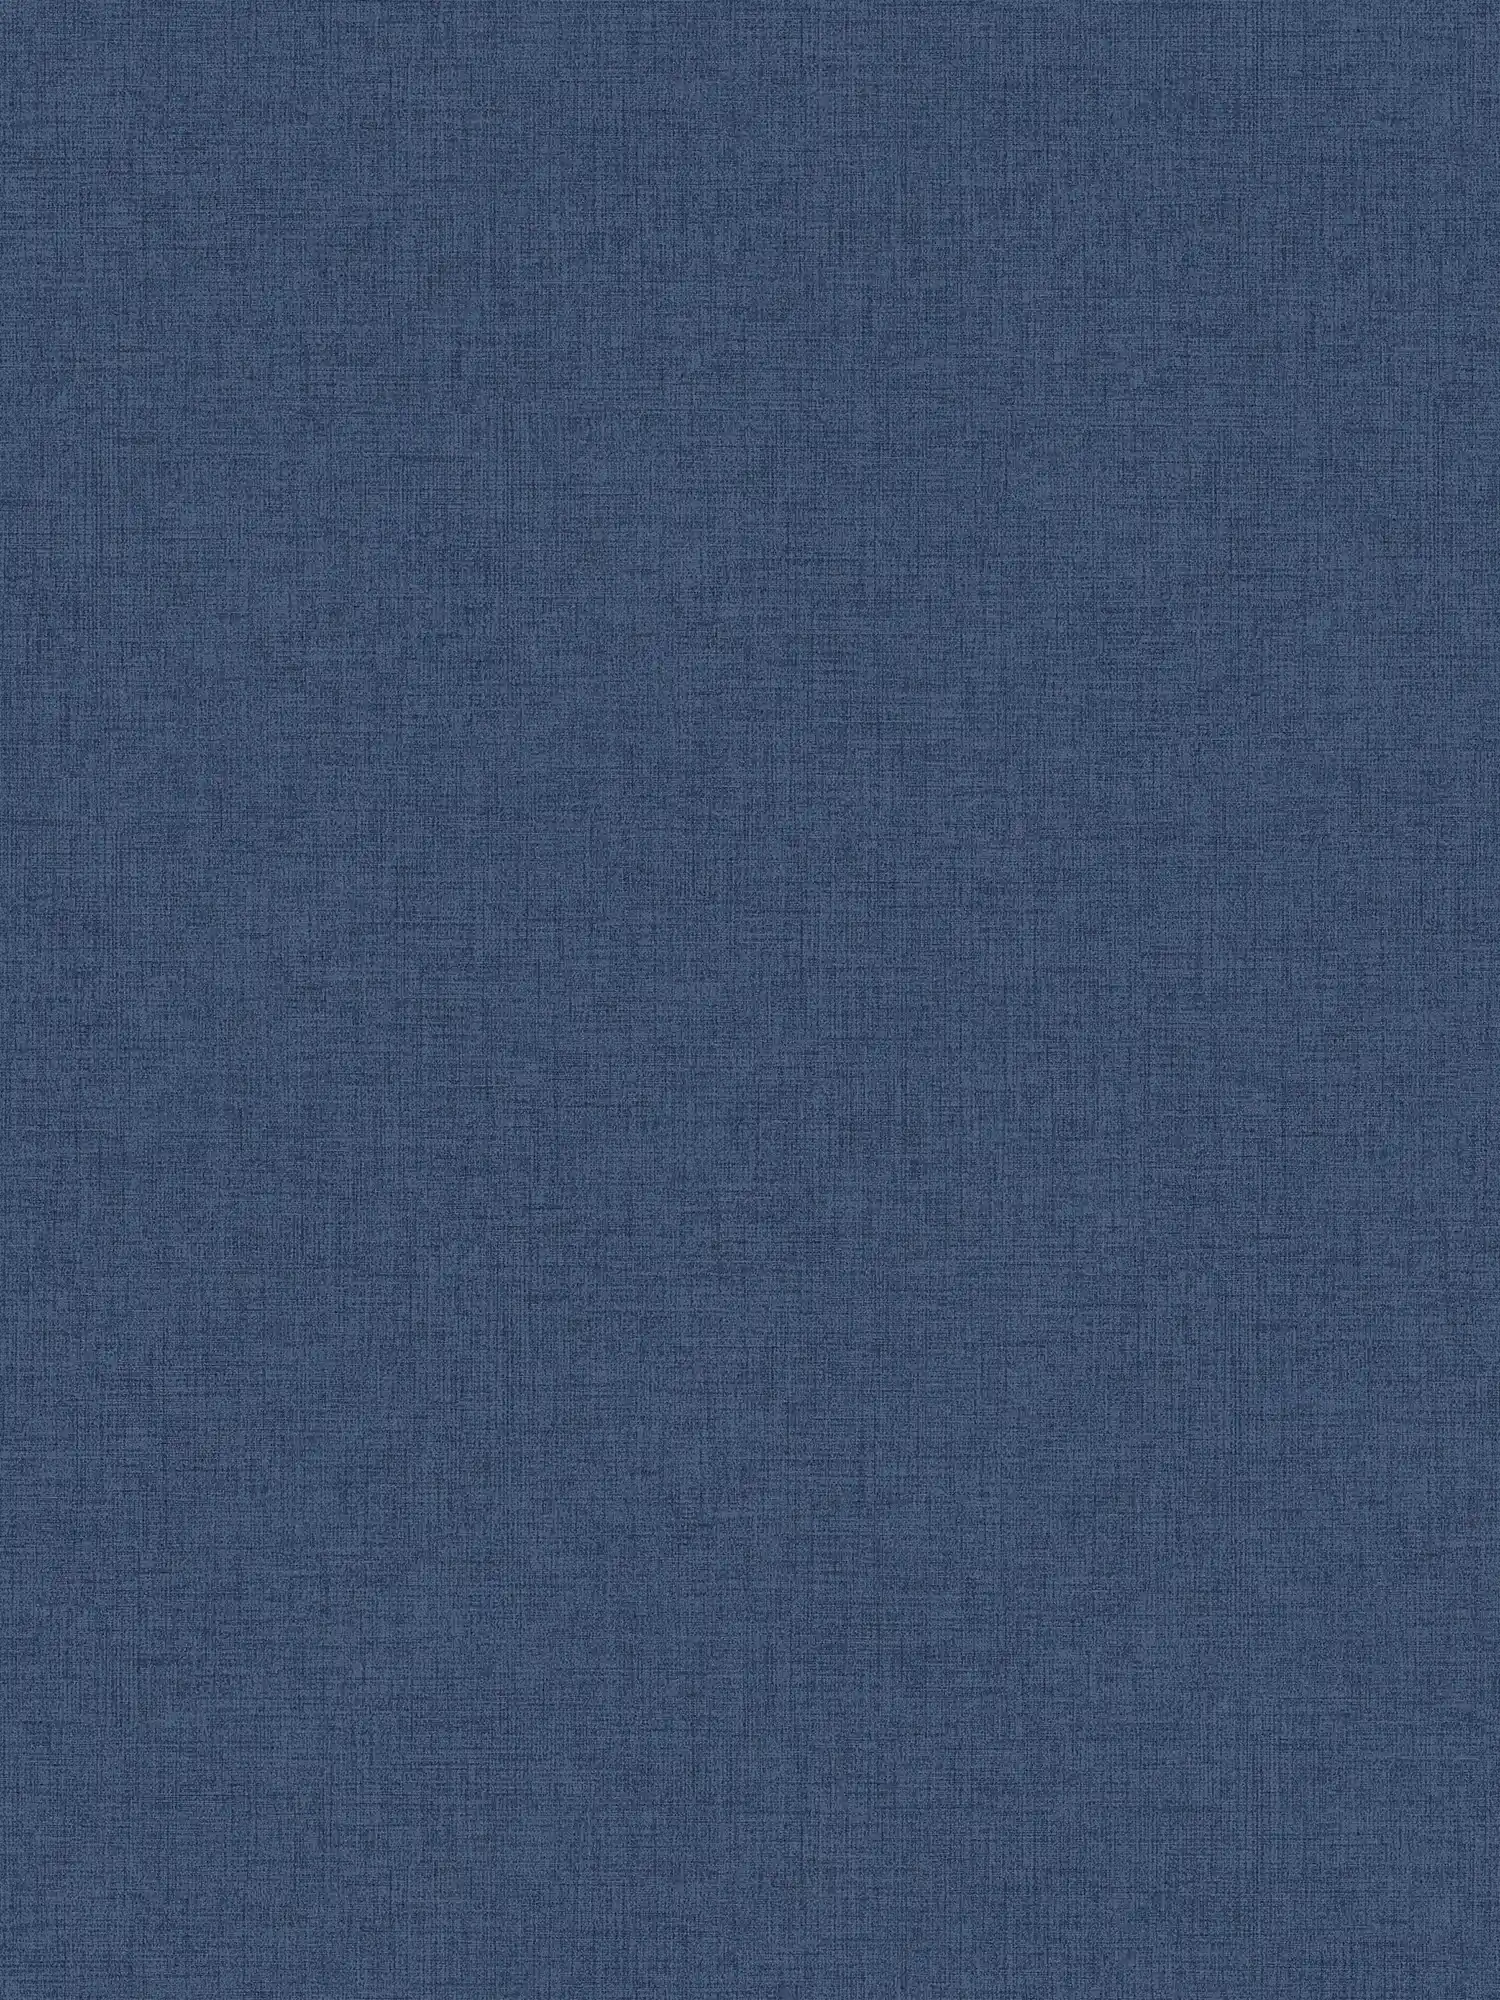 Carta da parati blu navy con aspetto di lino, Navy - Blu
